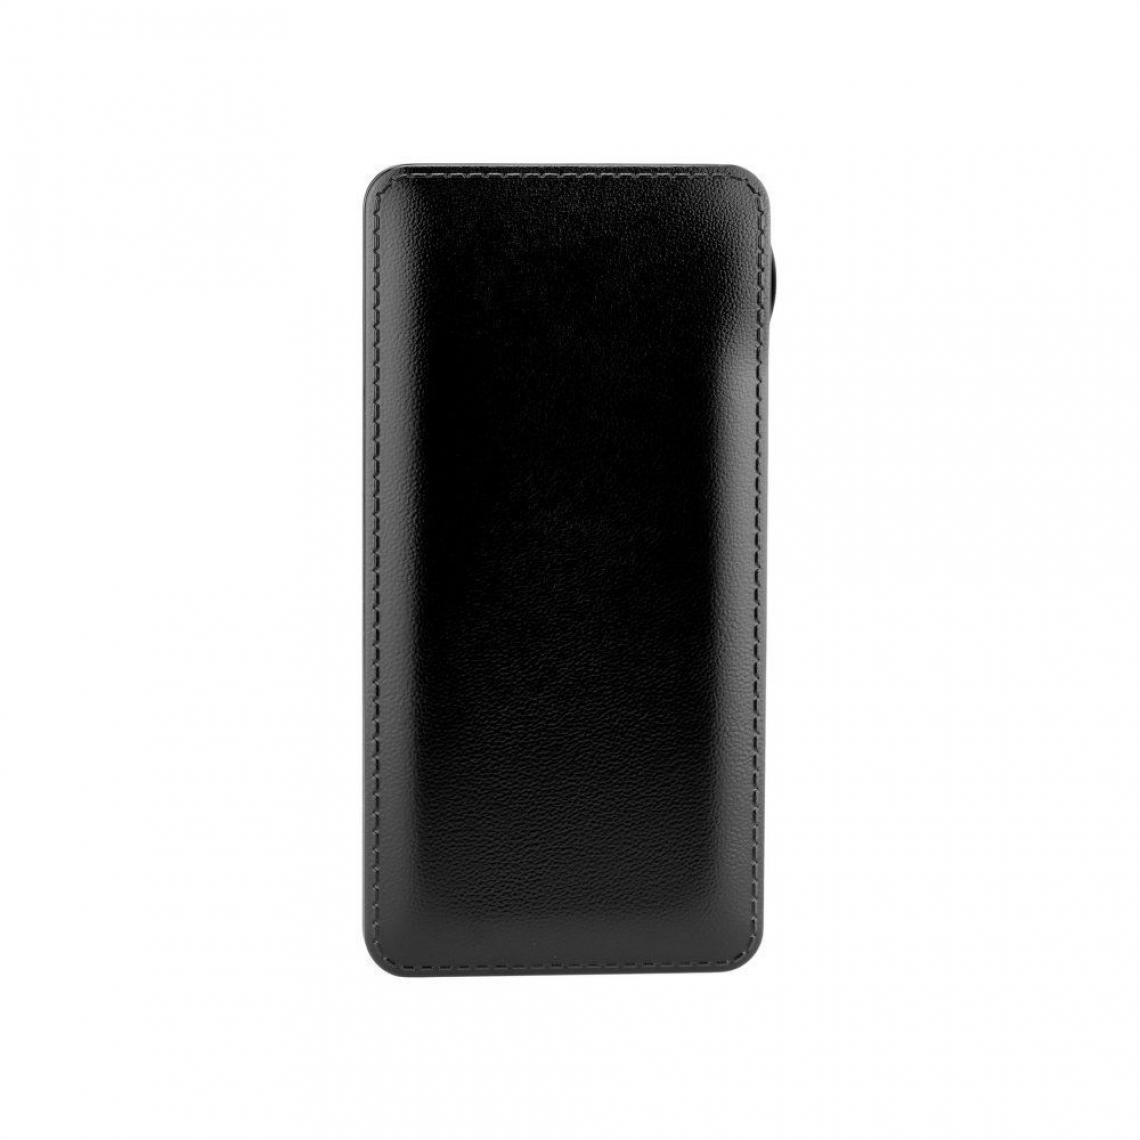 Ozzzo - Chargeur batterie externe 30000 mAh powerbank ozzzo noir pour Voyo VBOOK i5 - Autres accessoires smartphone